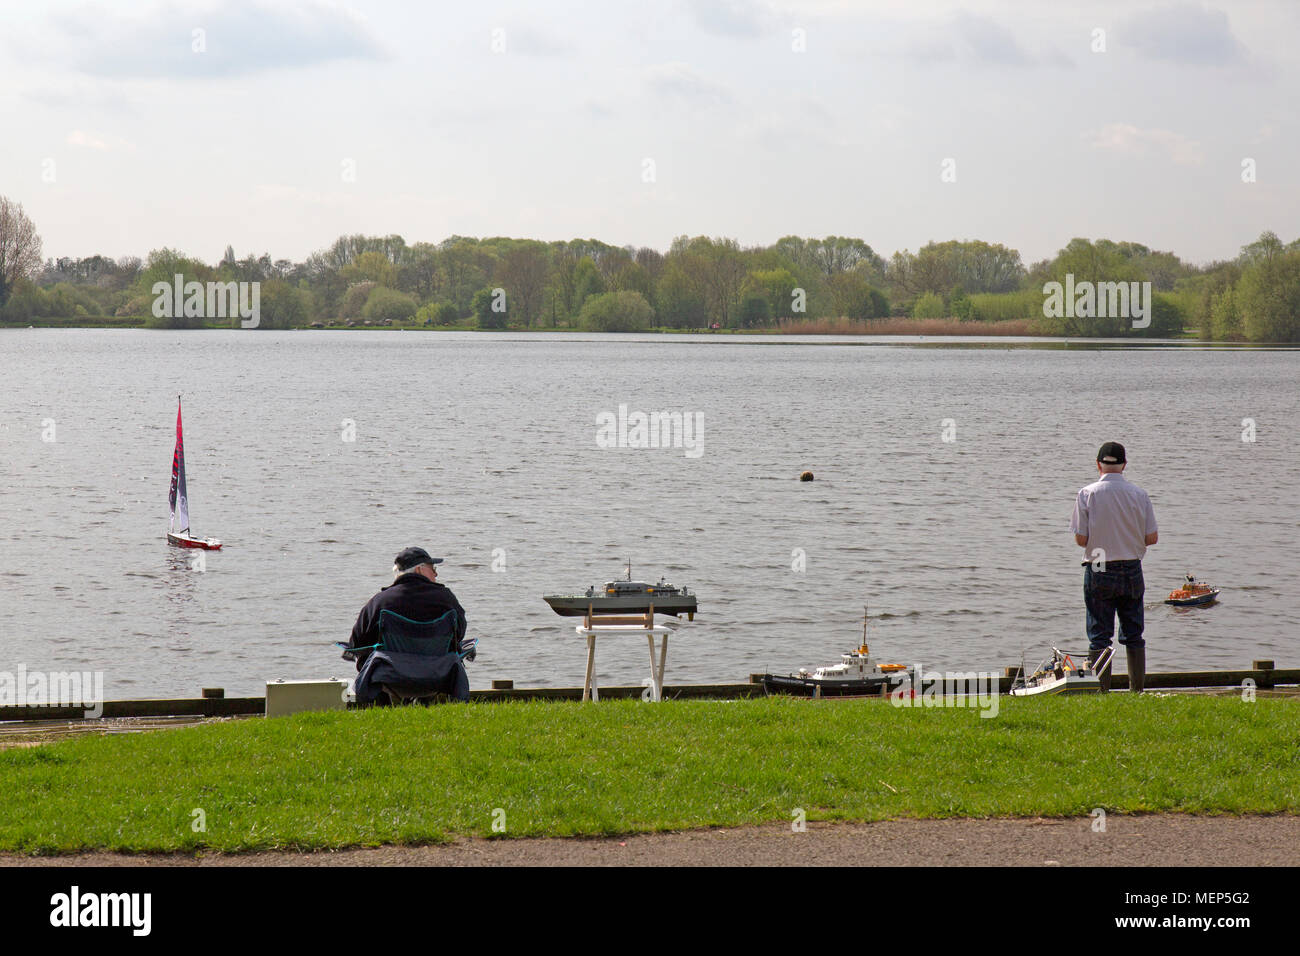 Watermead Country Park nel Leicestershire, in Inghilterra. Due uomini maturi giocando con le loro barche di modello su uno dei numerosi laghi nel parco. Foto Stock